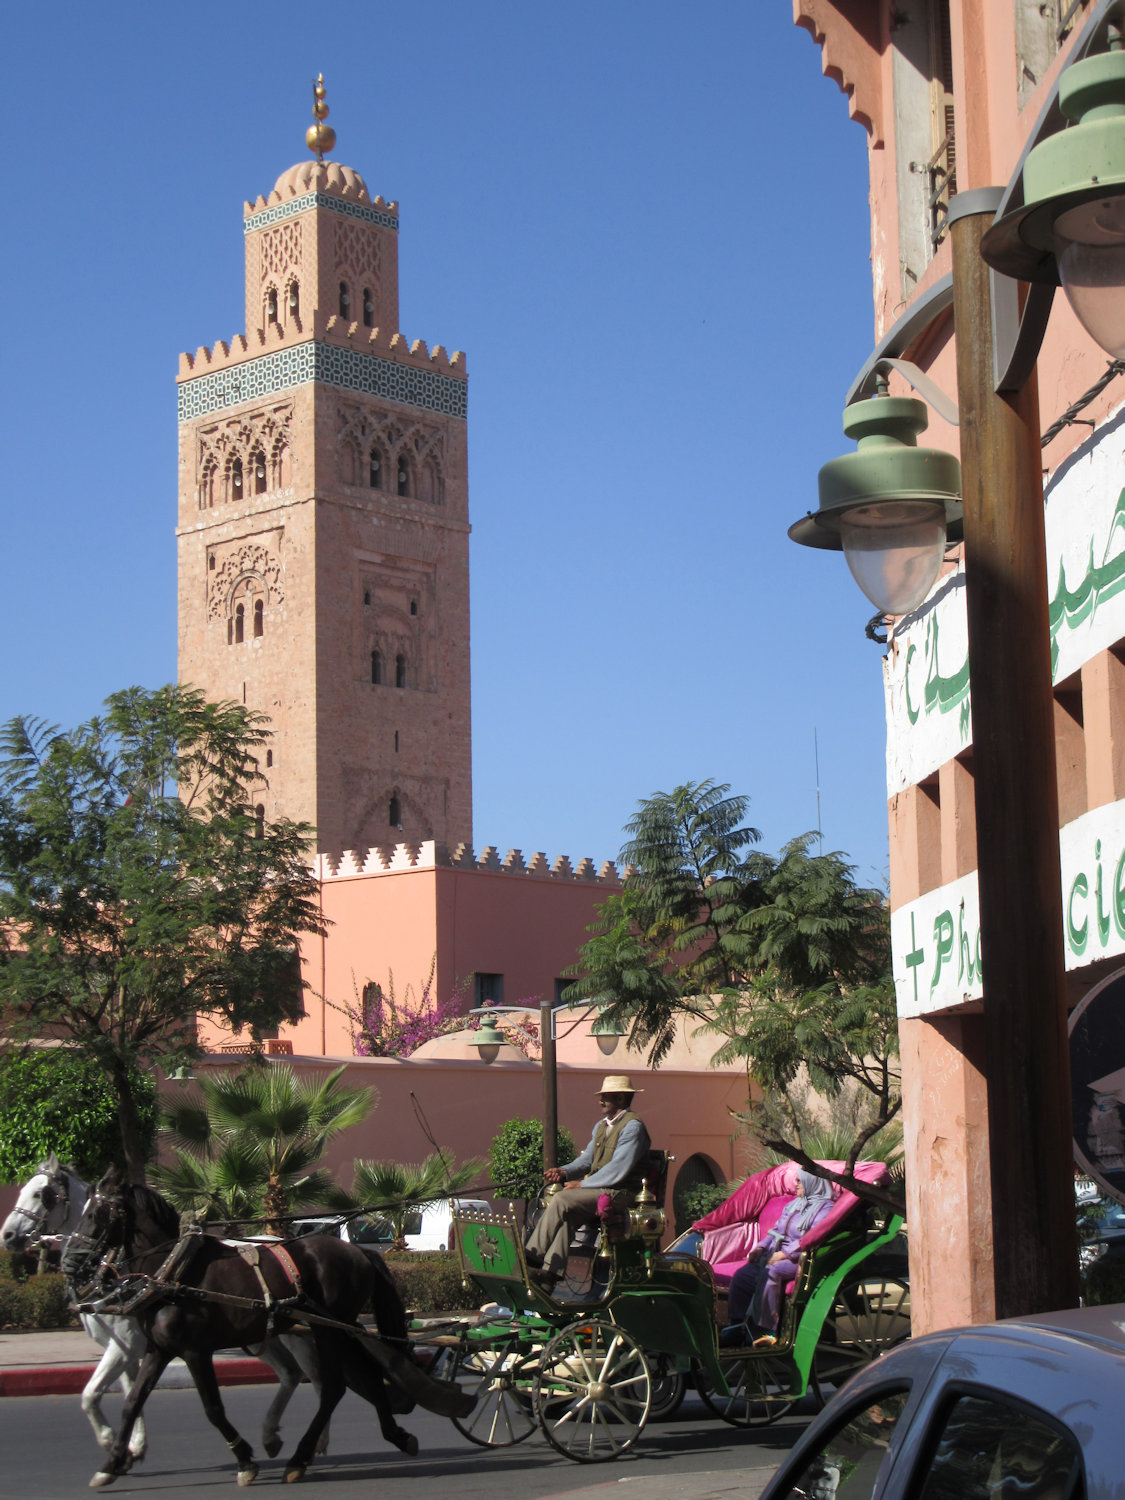 Kutubiya-Moschee in Marrakech, erbaut 1158 bis 1162, das Wahrzeichen der Stadt